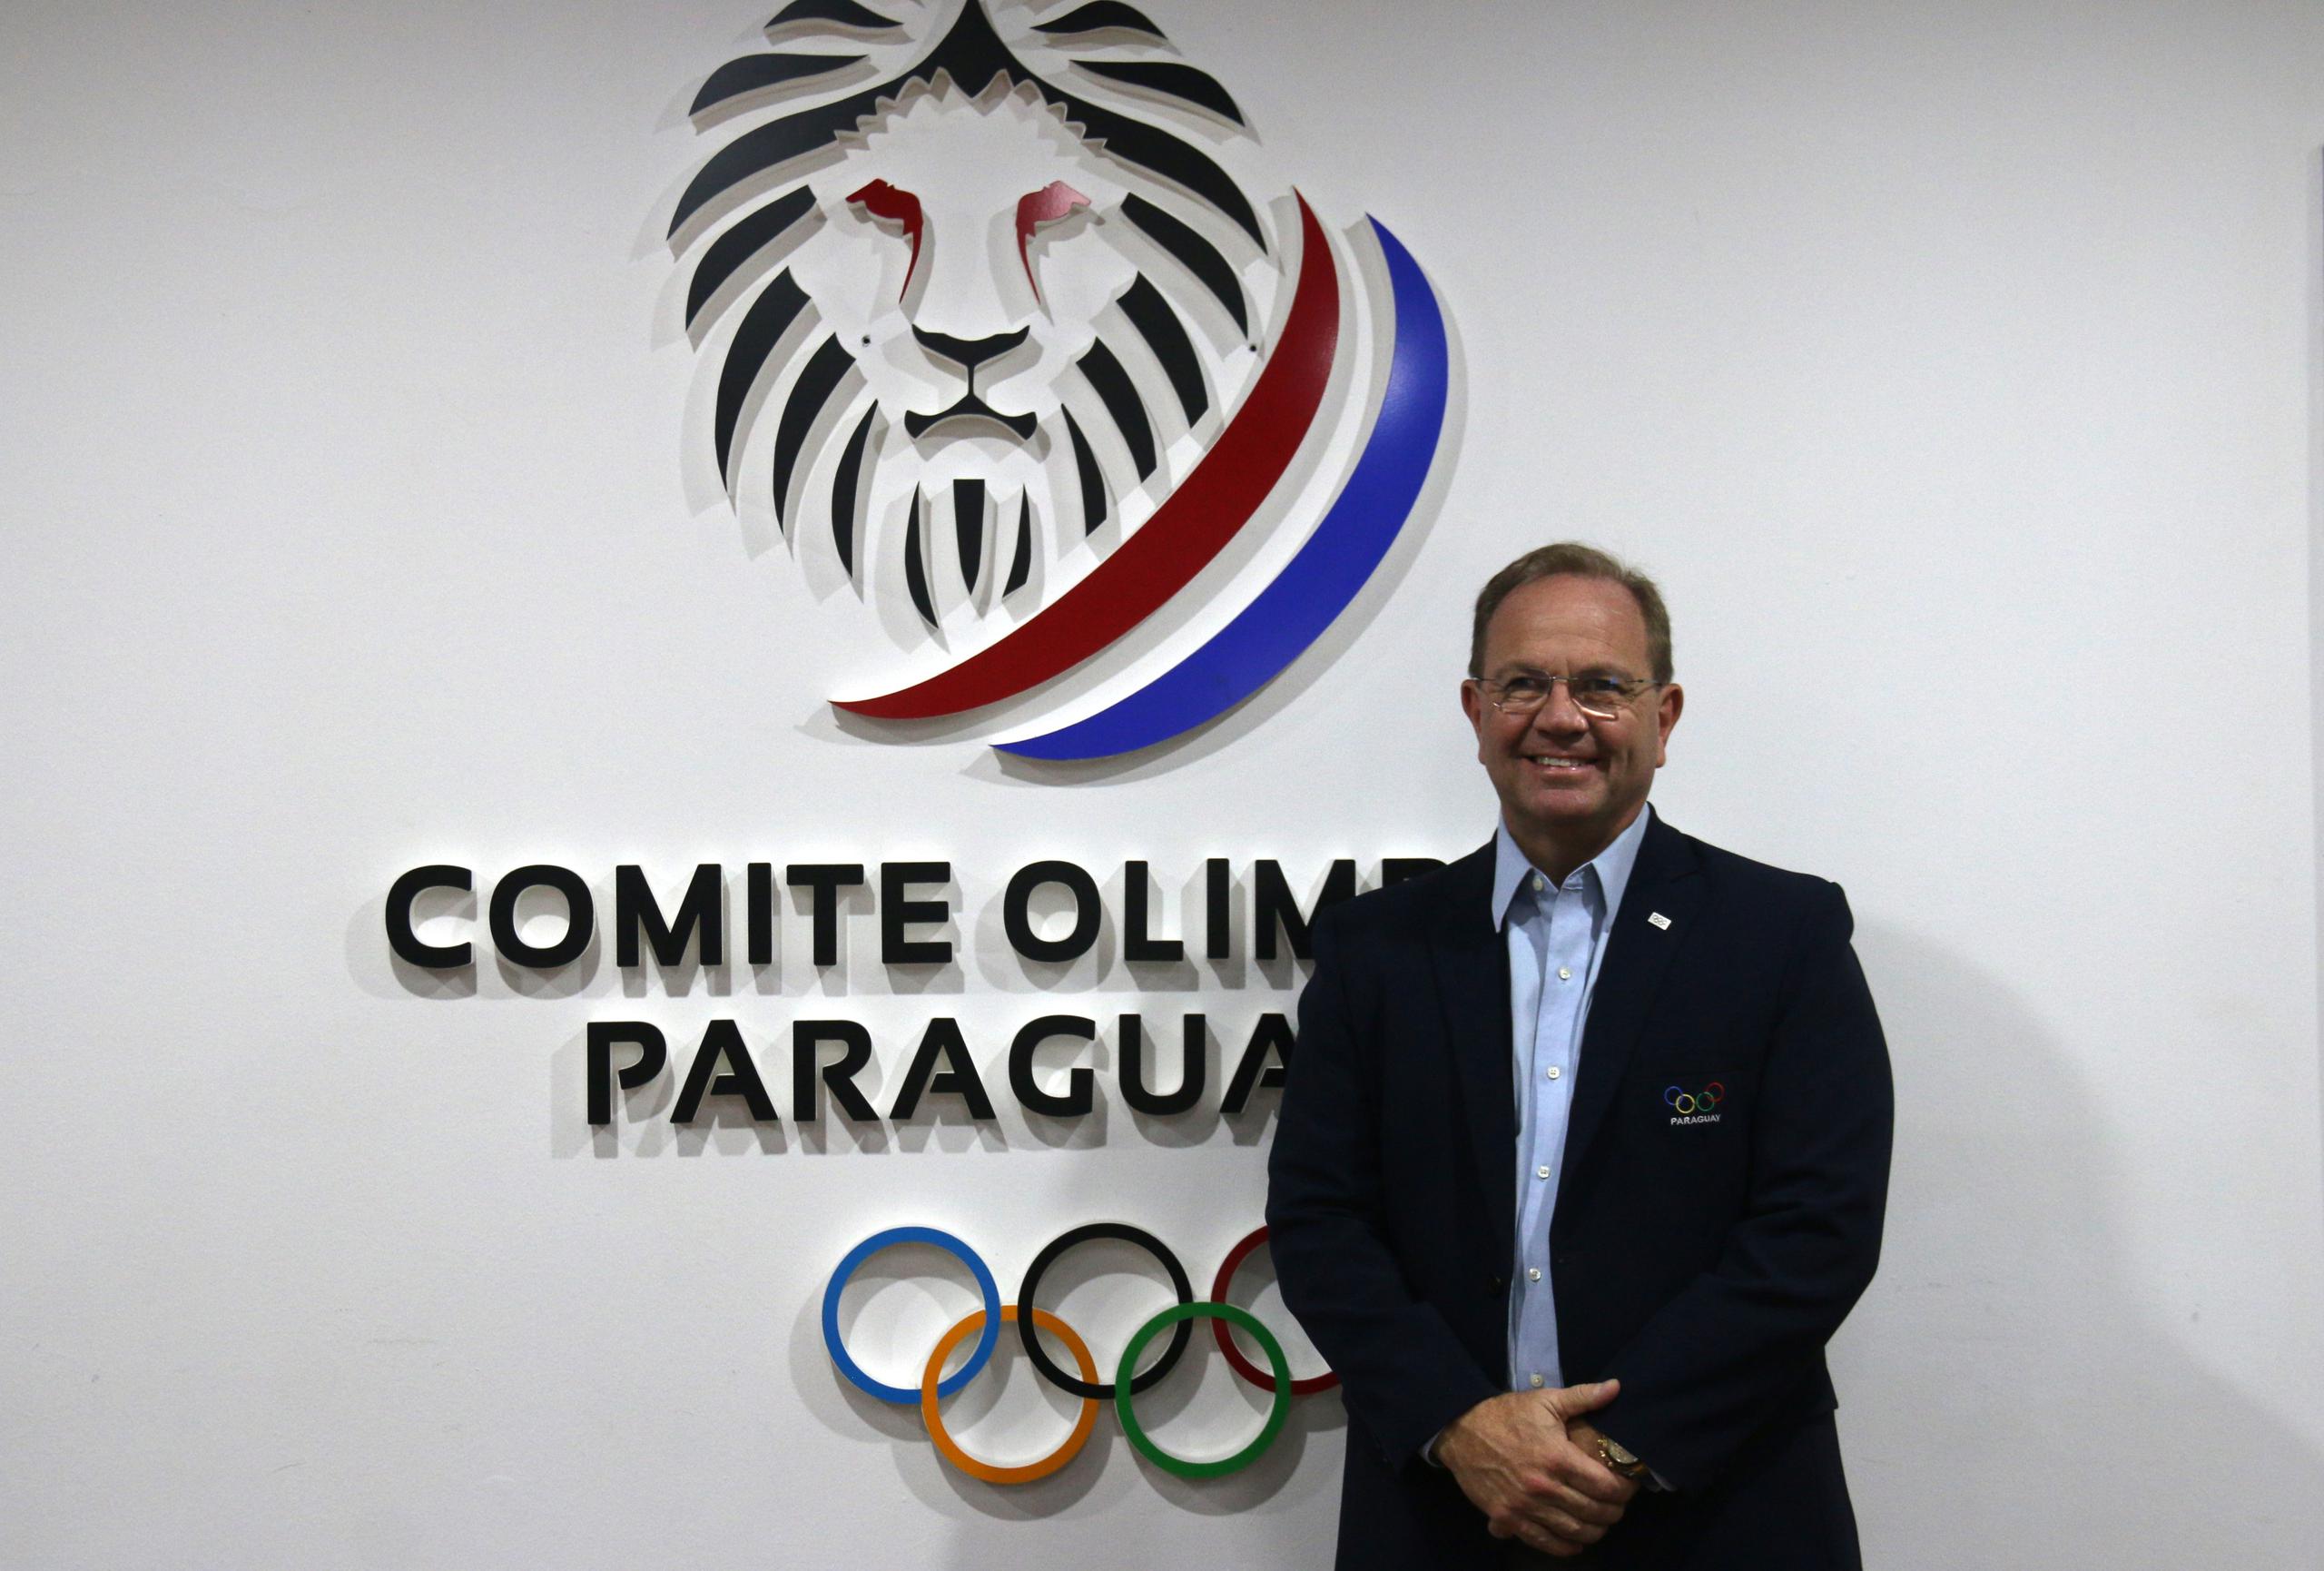 El presidente del Comité Olímpico Paraguayo, Camilo Pérez López Moreira, aseguró que su país cuenta con el 90% de la infraestructura para albergar unos Juegos Panamericanos.